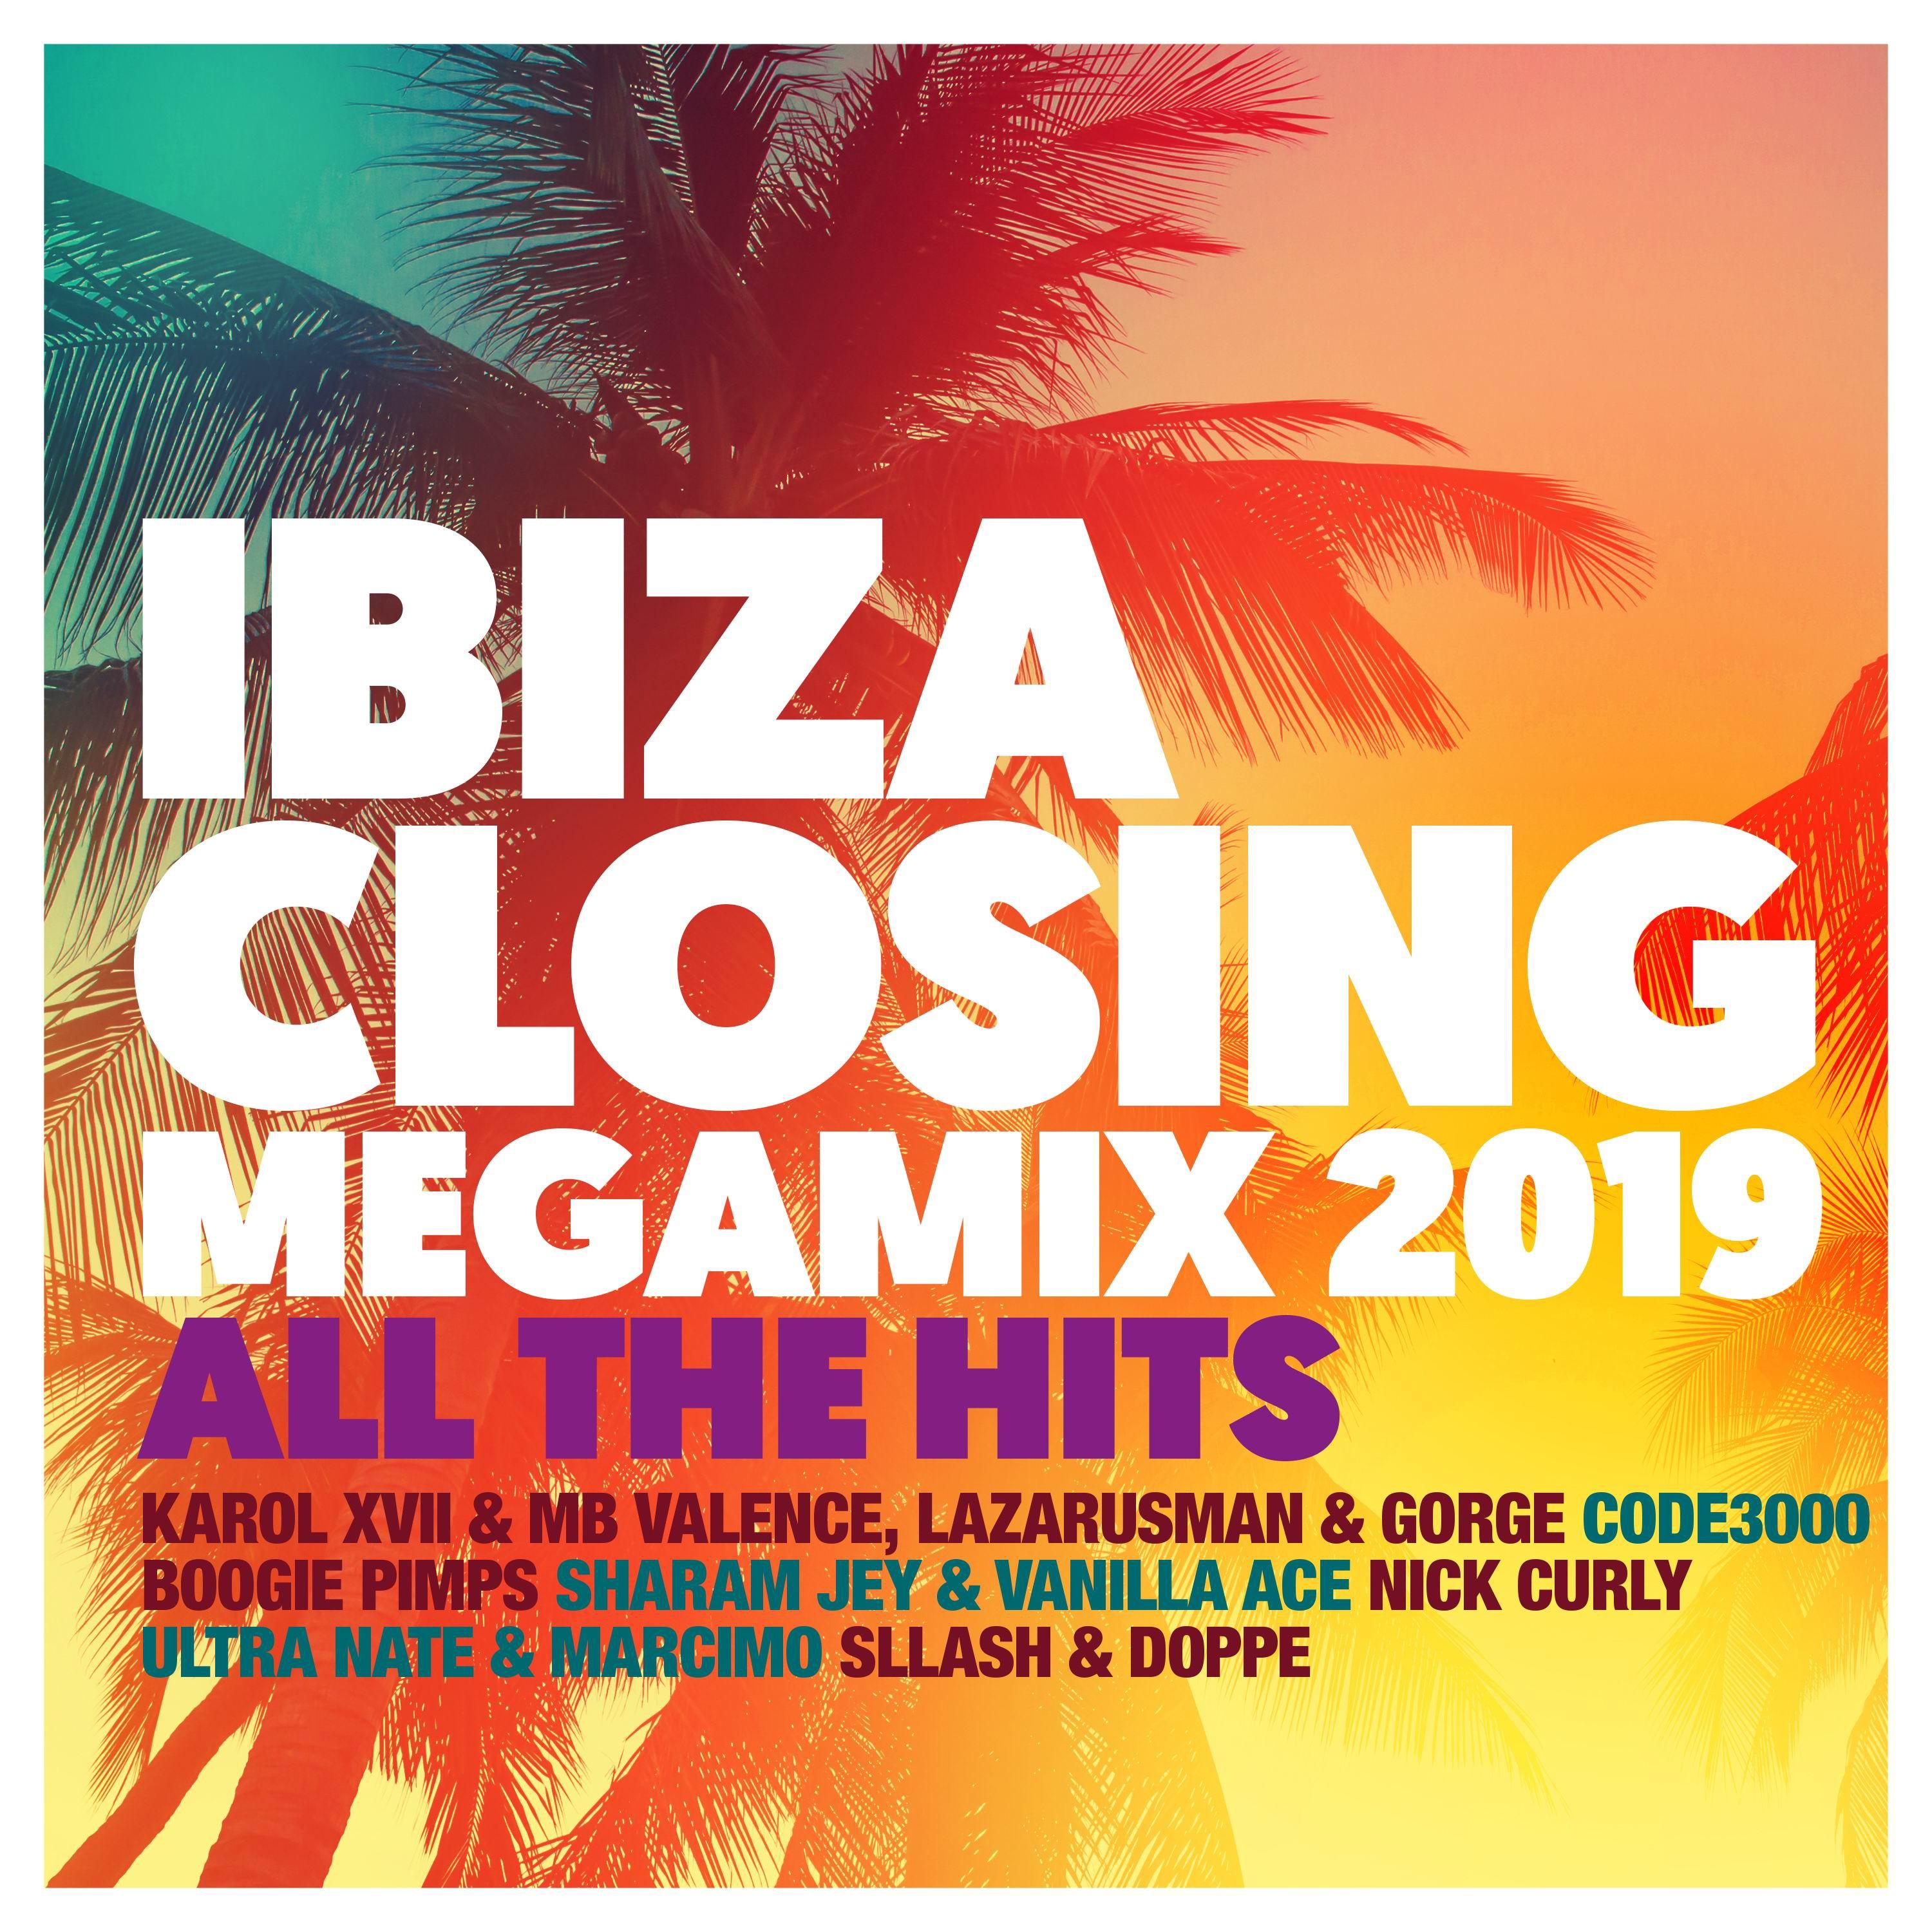 Ibiza Closing Megamix 2019 - The Mix, Pt.2